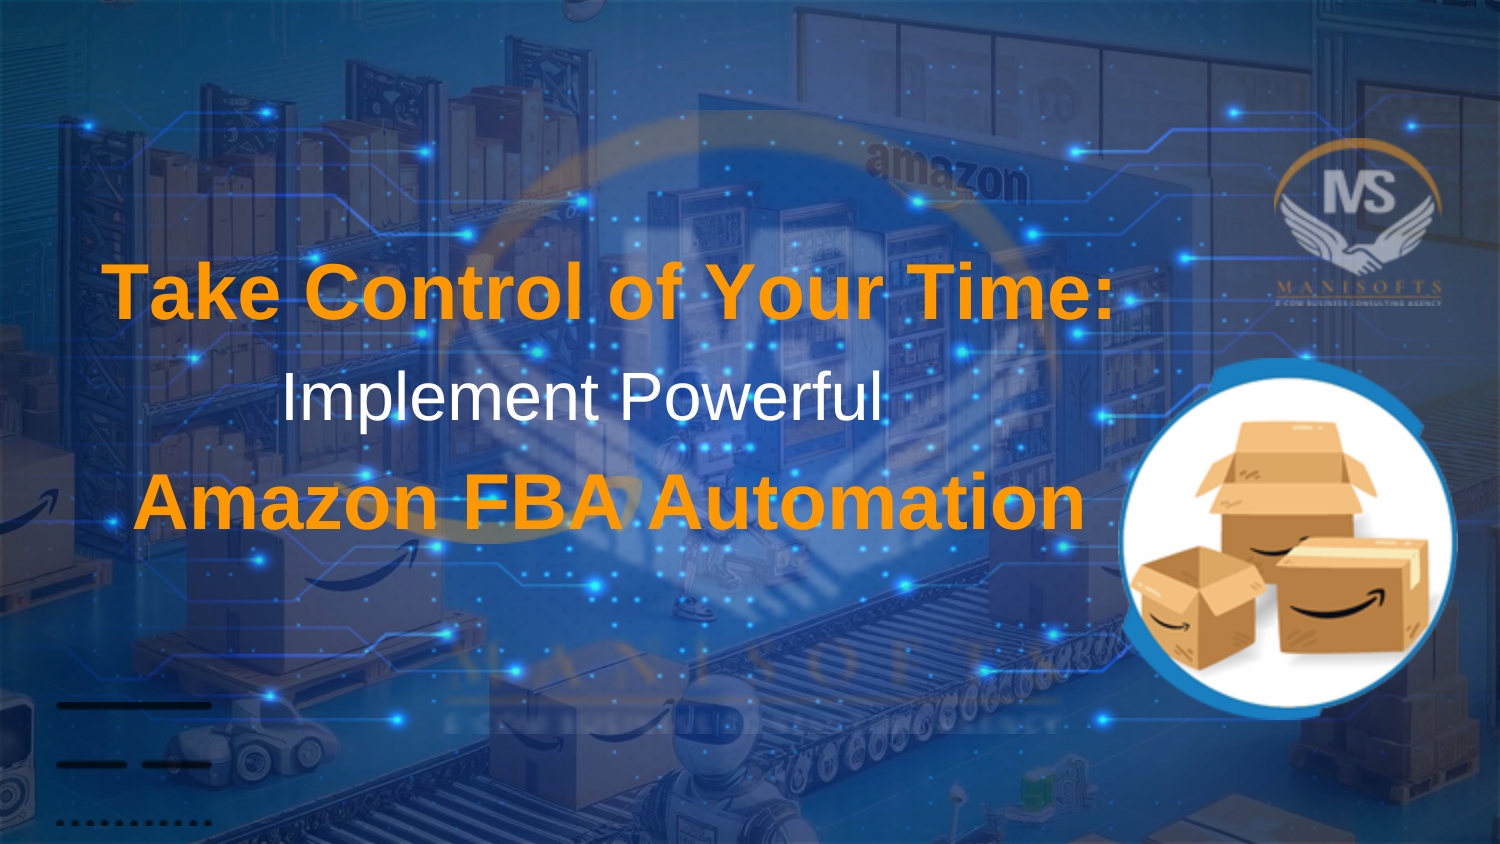 Amazon FBA Automation